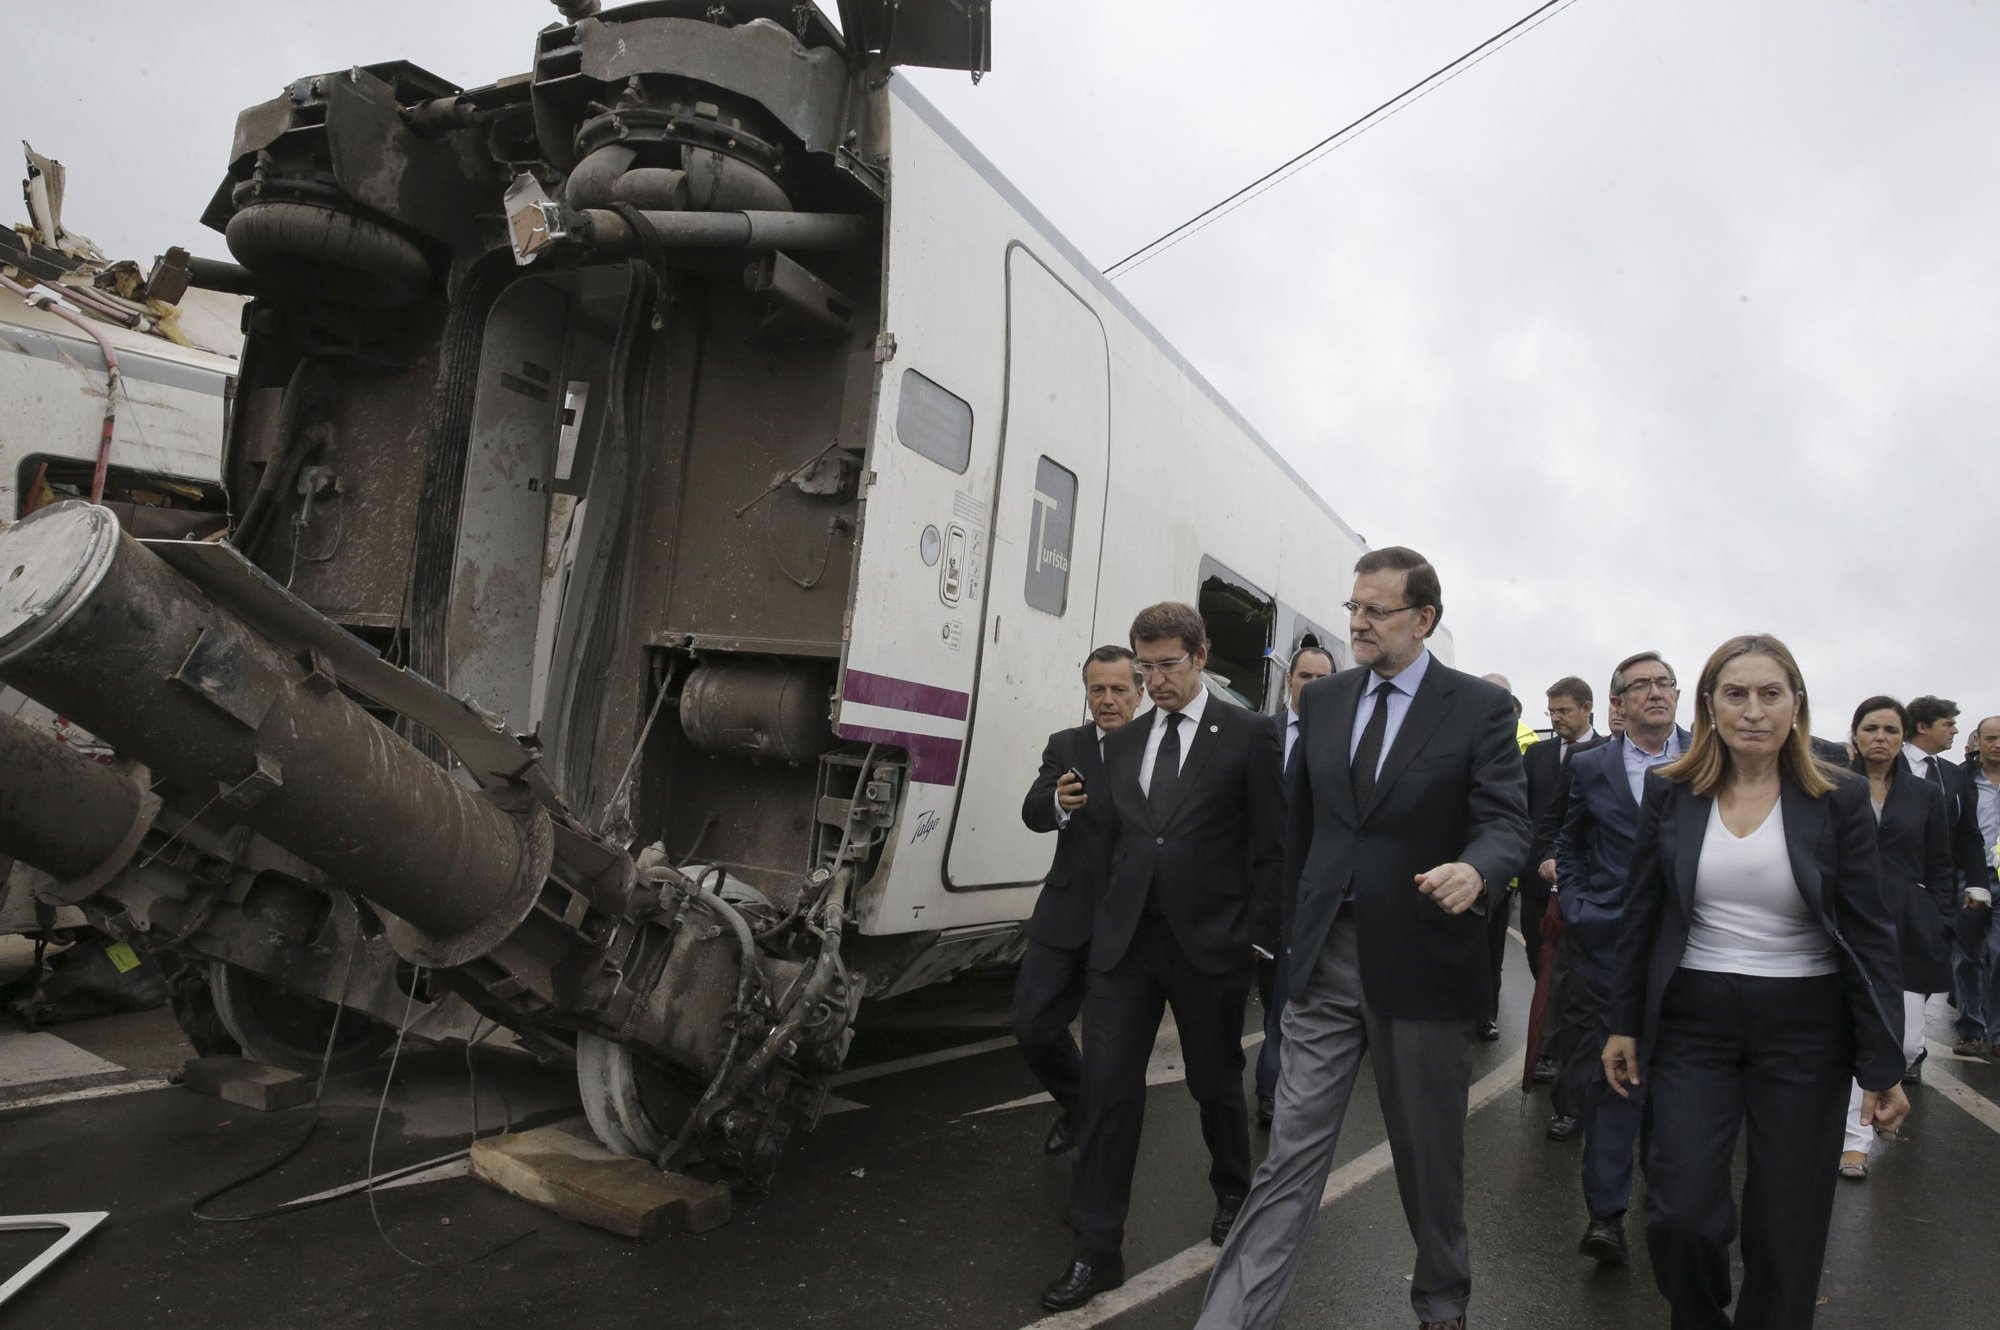 24 de julio de 2013 Cerca de Santiago de Compostela (España) descarrilaba un tren ALVIA con 217 pasajeros a bordo